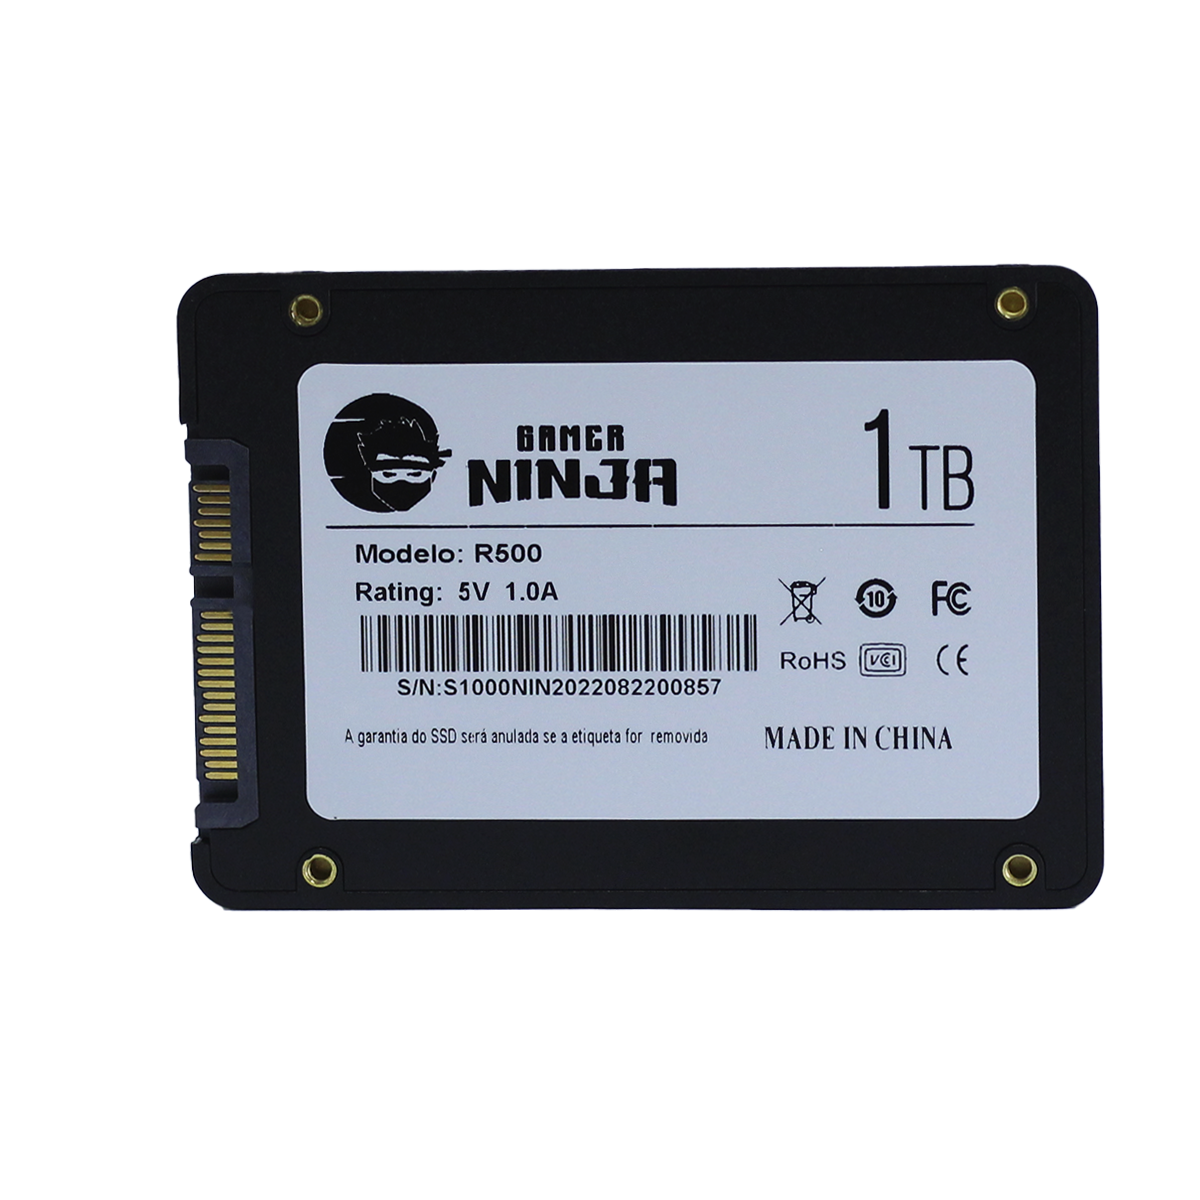 SSD Gamer Ninja Shuriken 1TB, Sata III, Leitura 500MBs E Gravação 400MBs, GN-SSD-SH/1TB